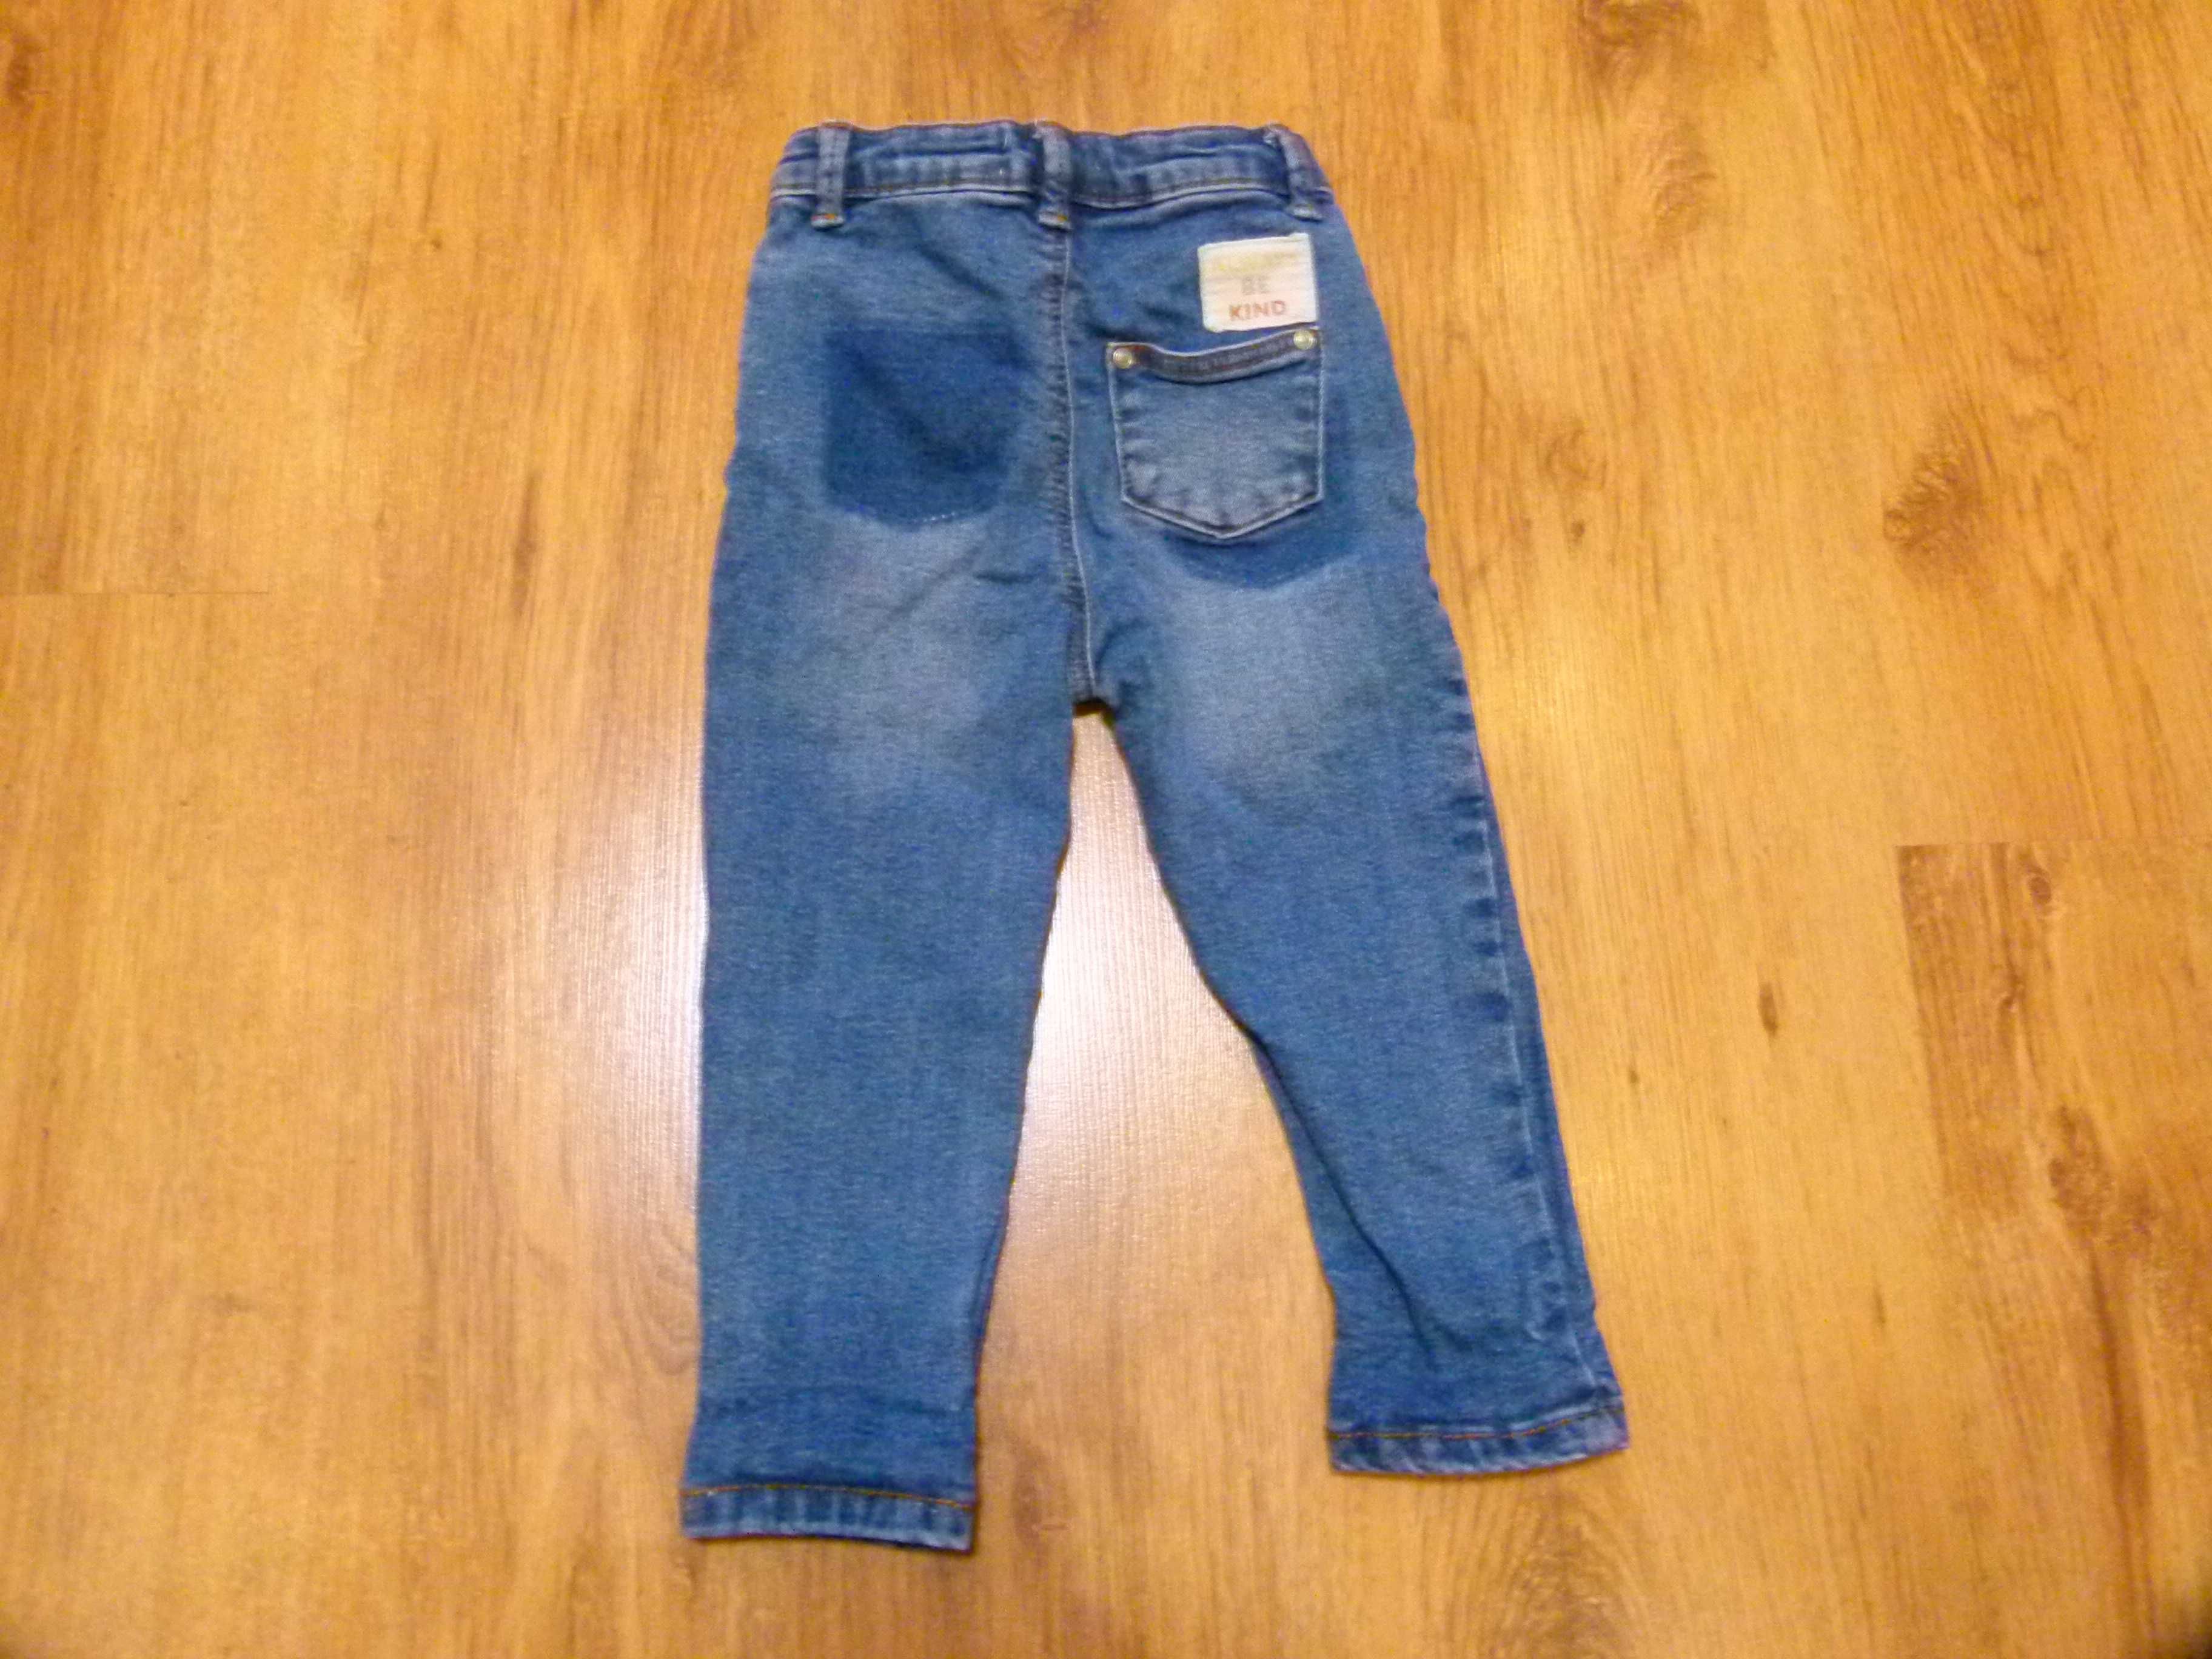 rozm 86 Primark Care spodnie jeans z przetarciami chłopięce